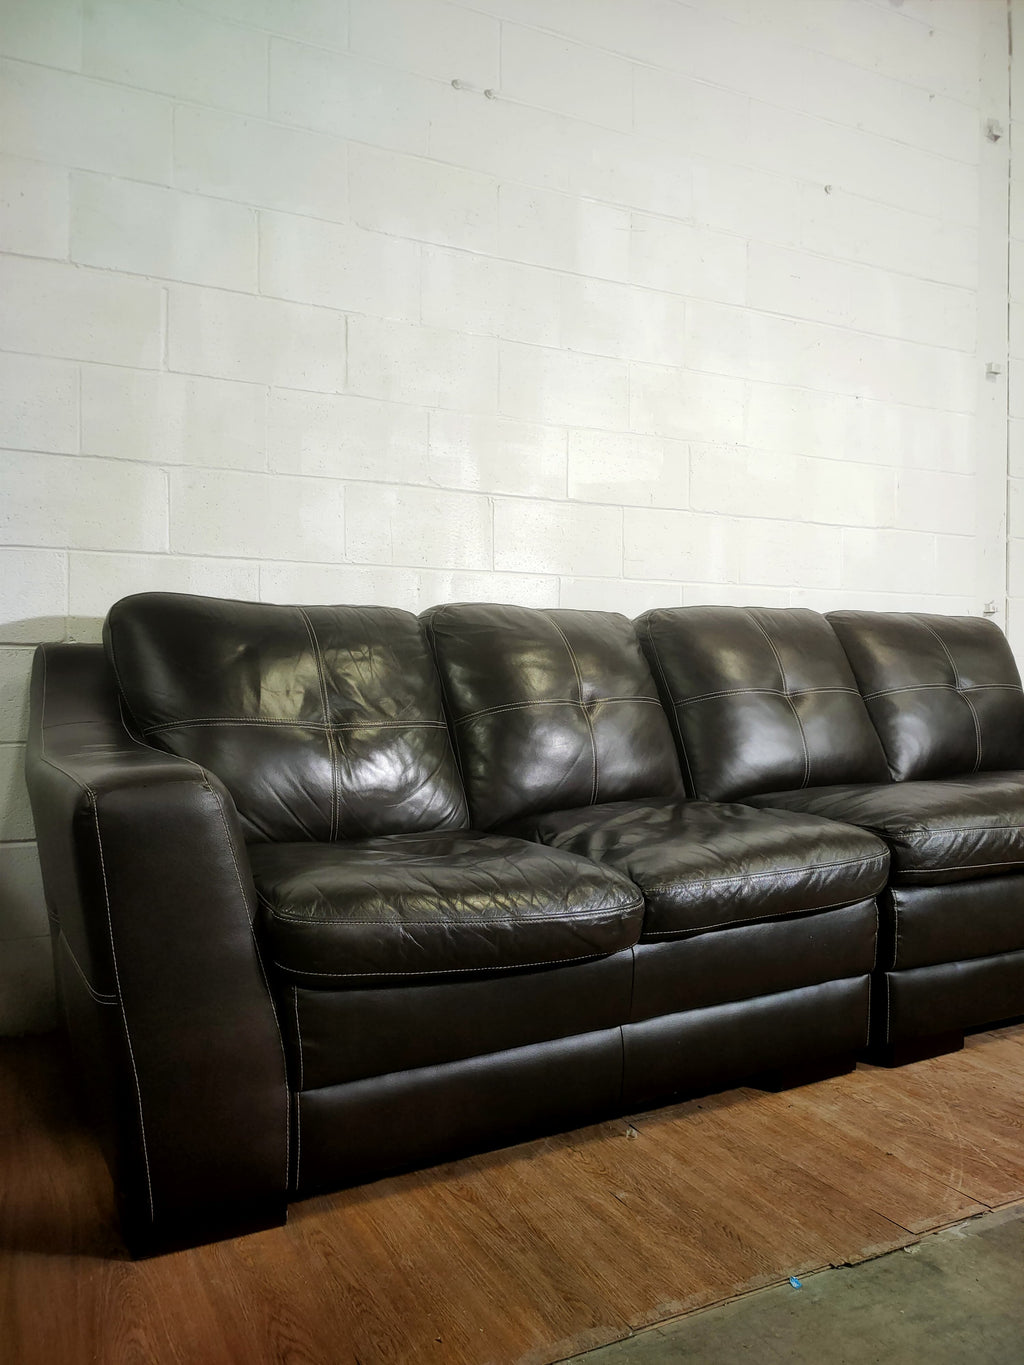 4 Seater Leather Sofa